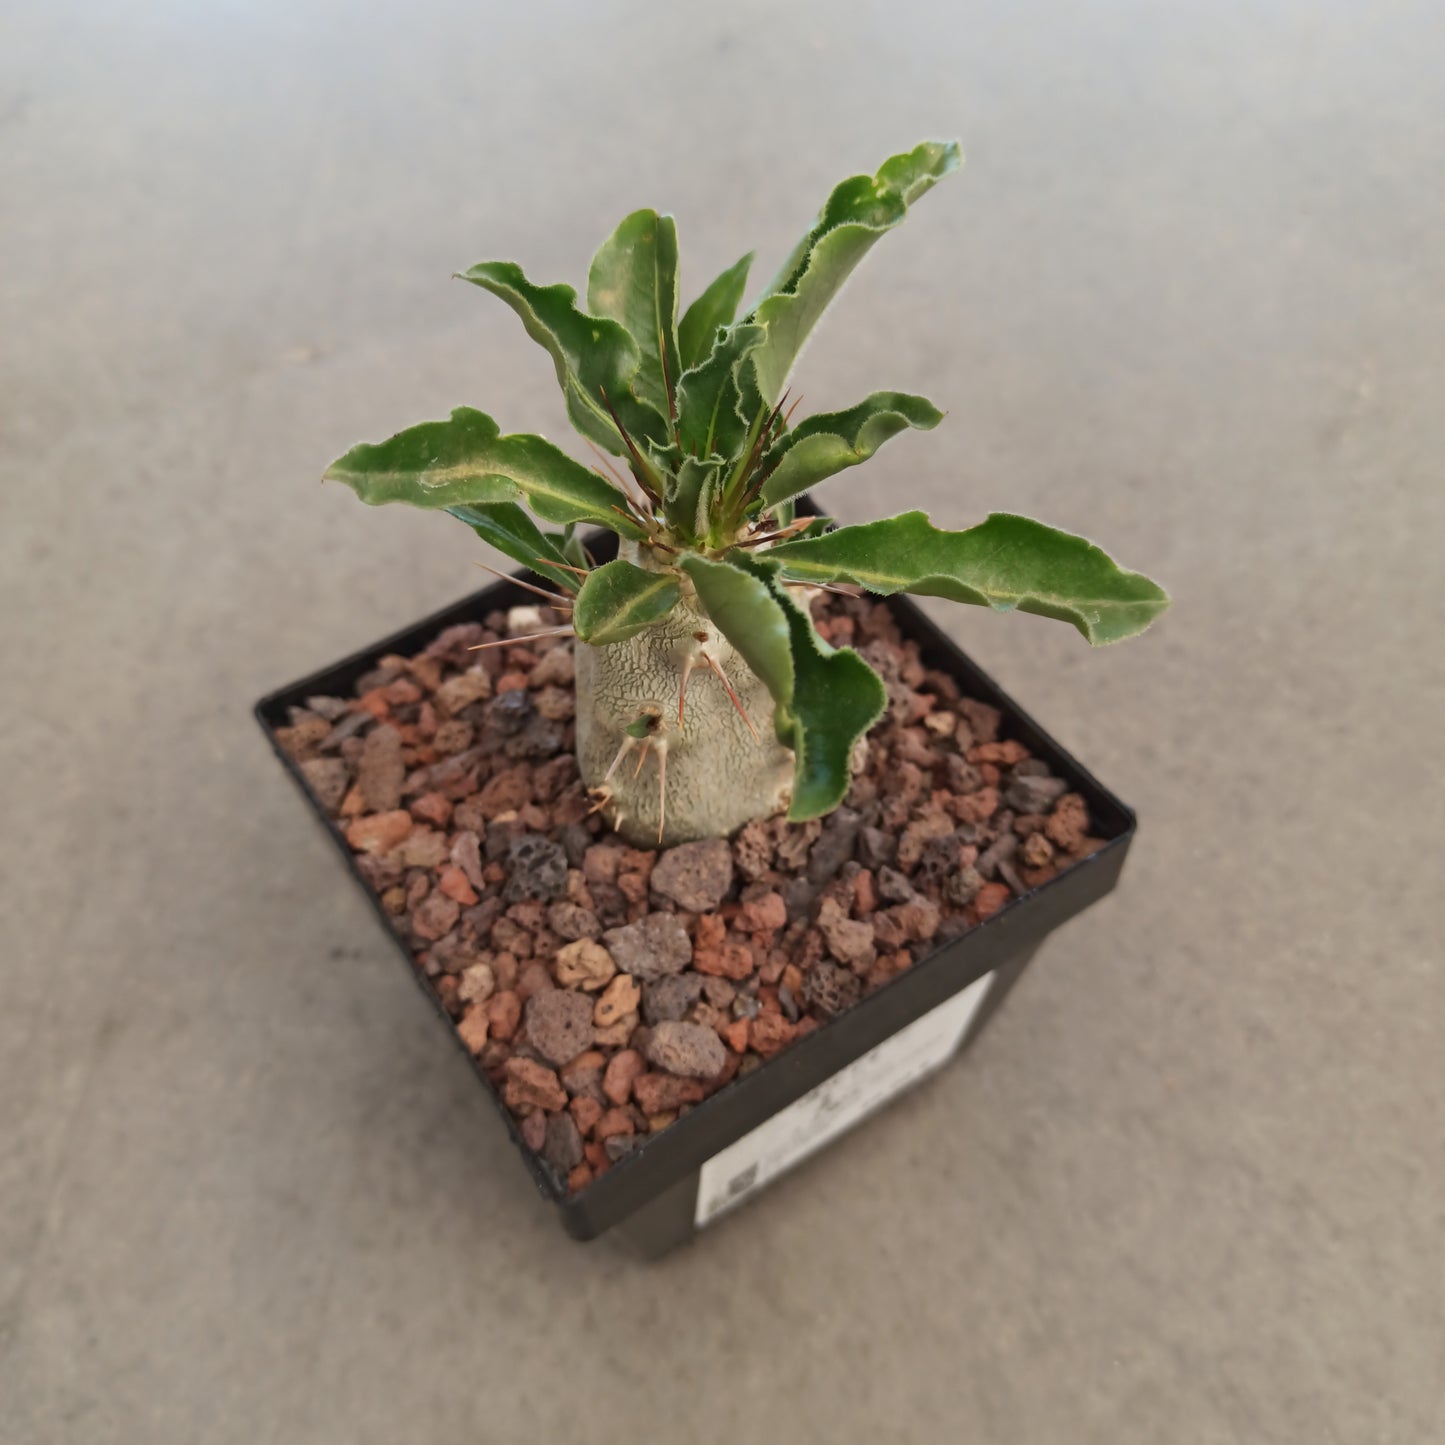 Pachypodium lealli subsp. saundersii